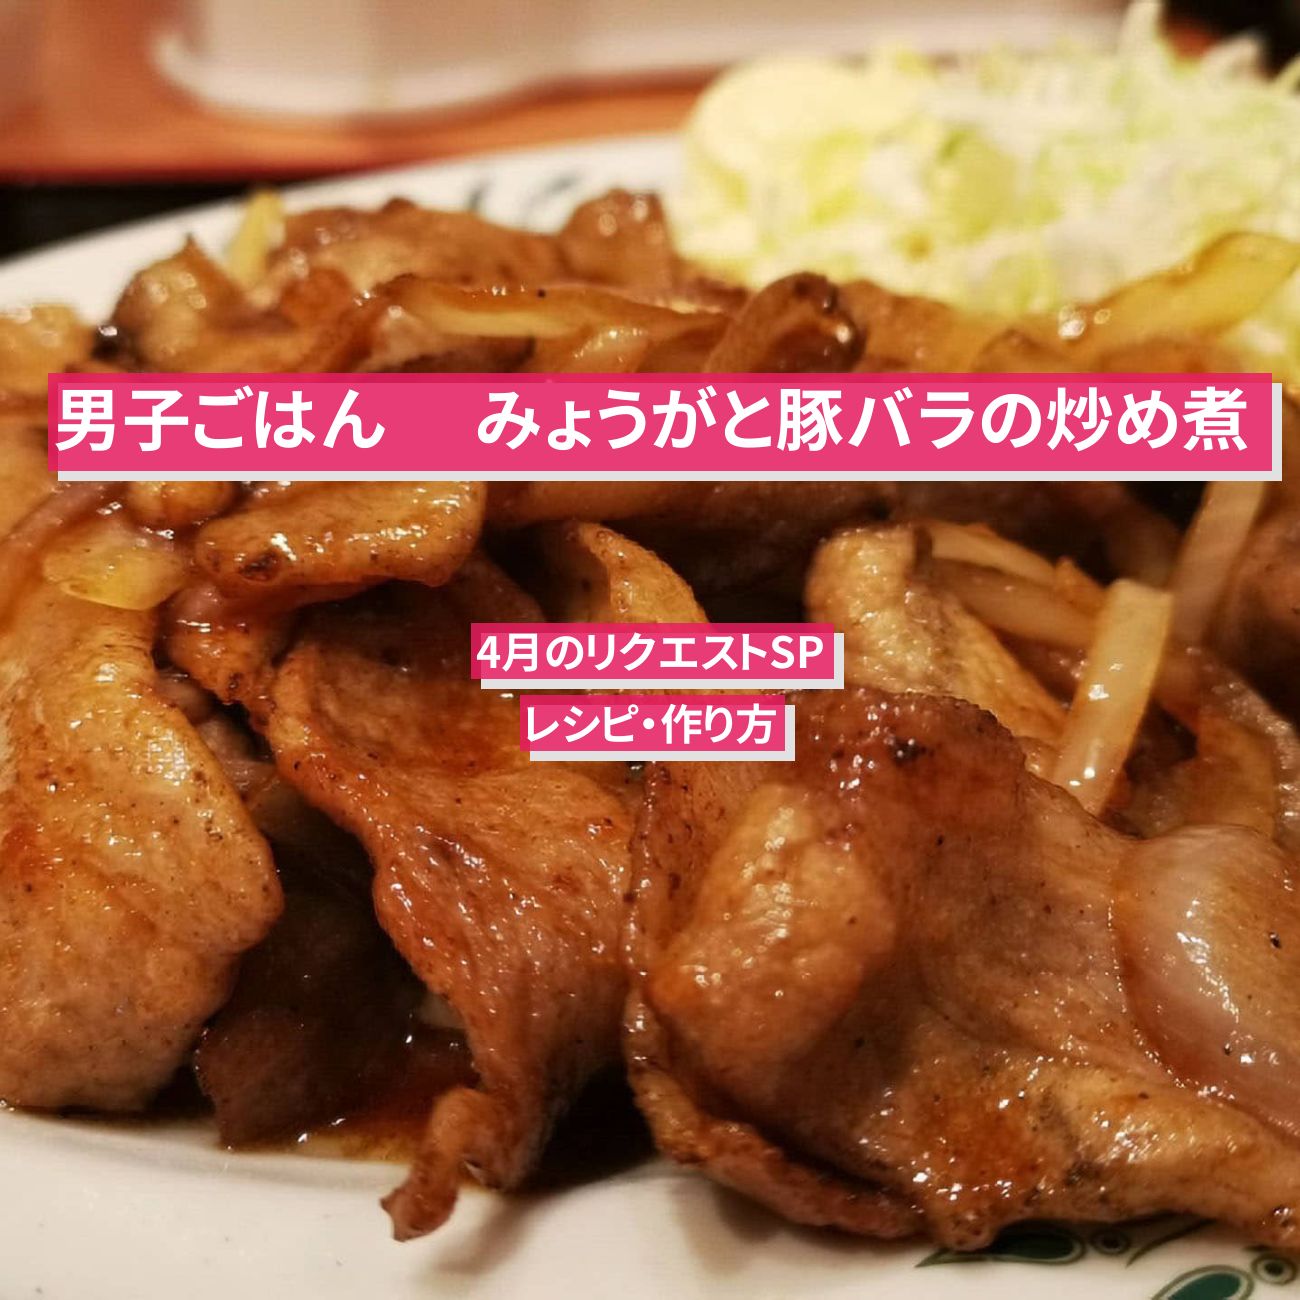 【男子ごはん】『みょうがと豚バラの炒め煮』栗原心平さんのレシピ・作り方